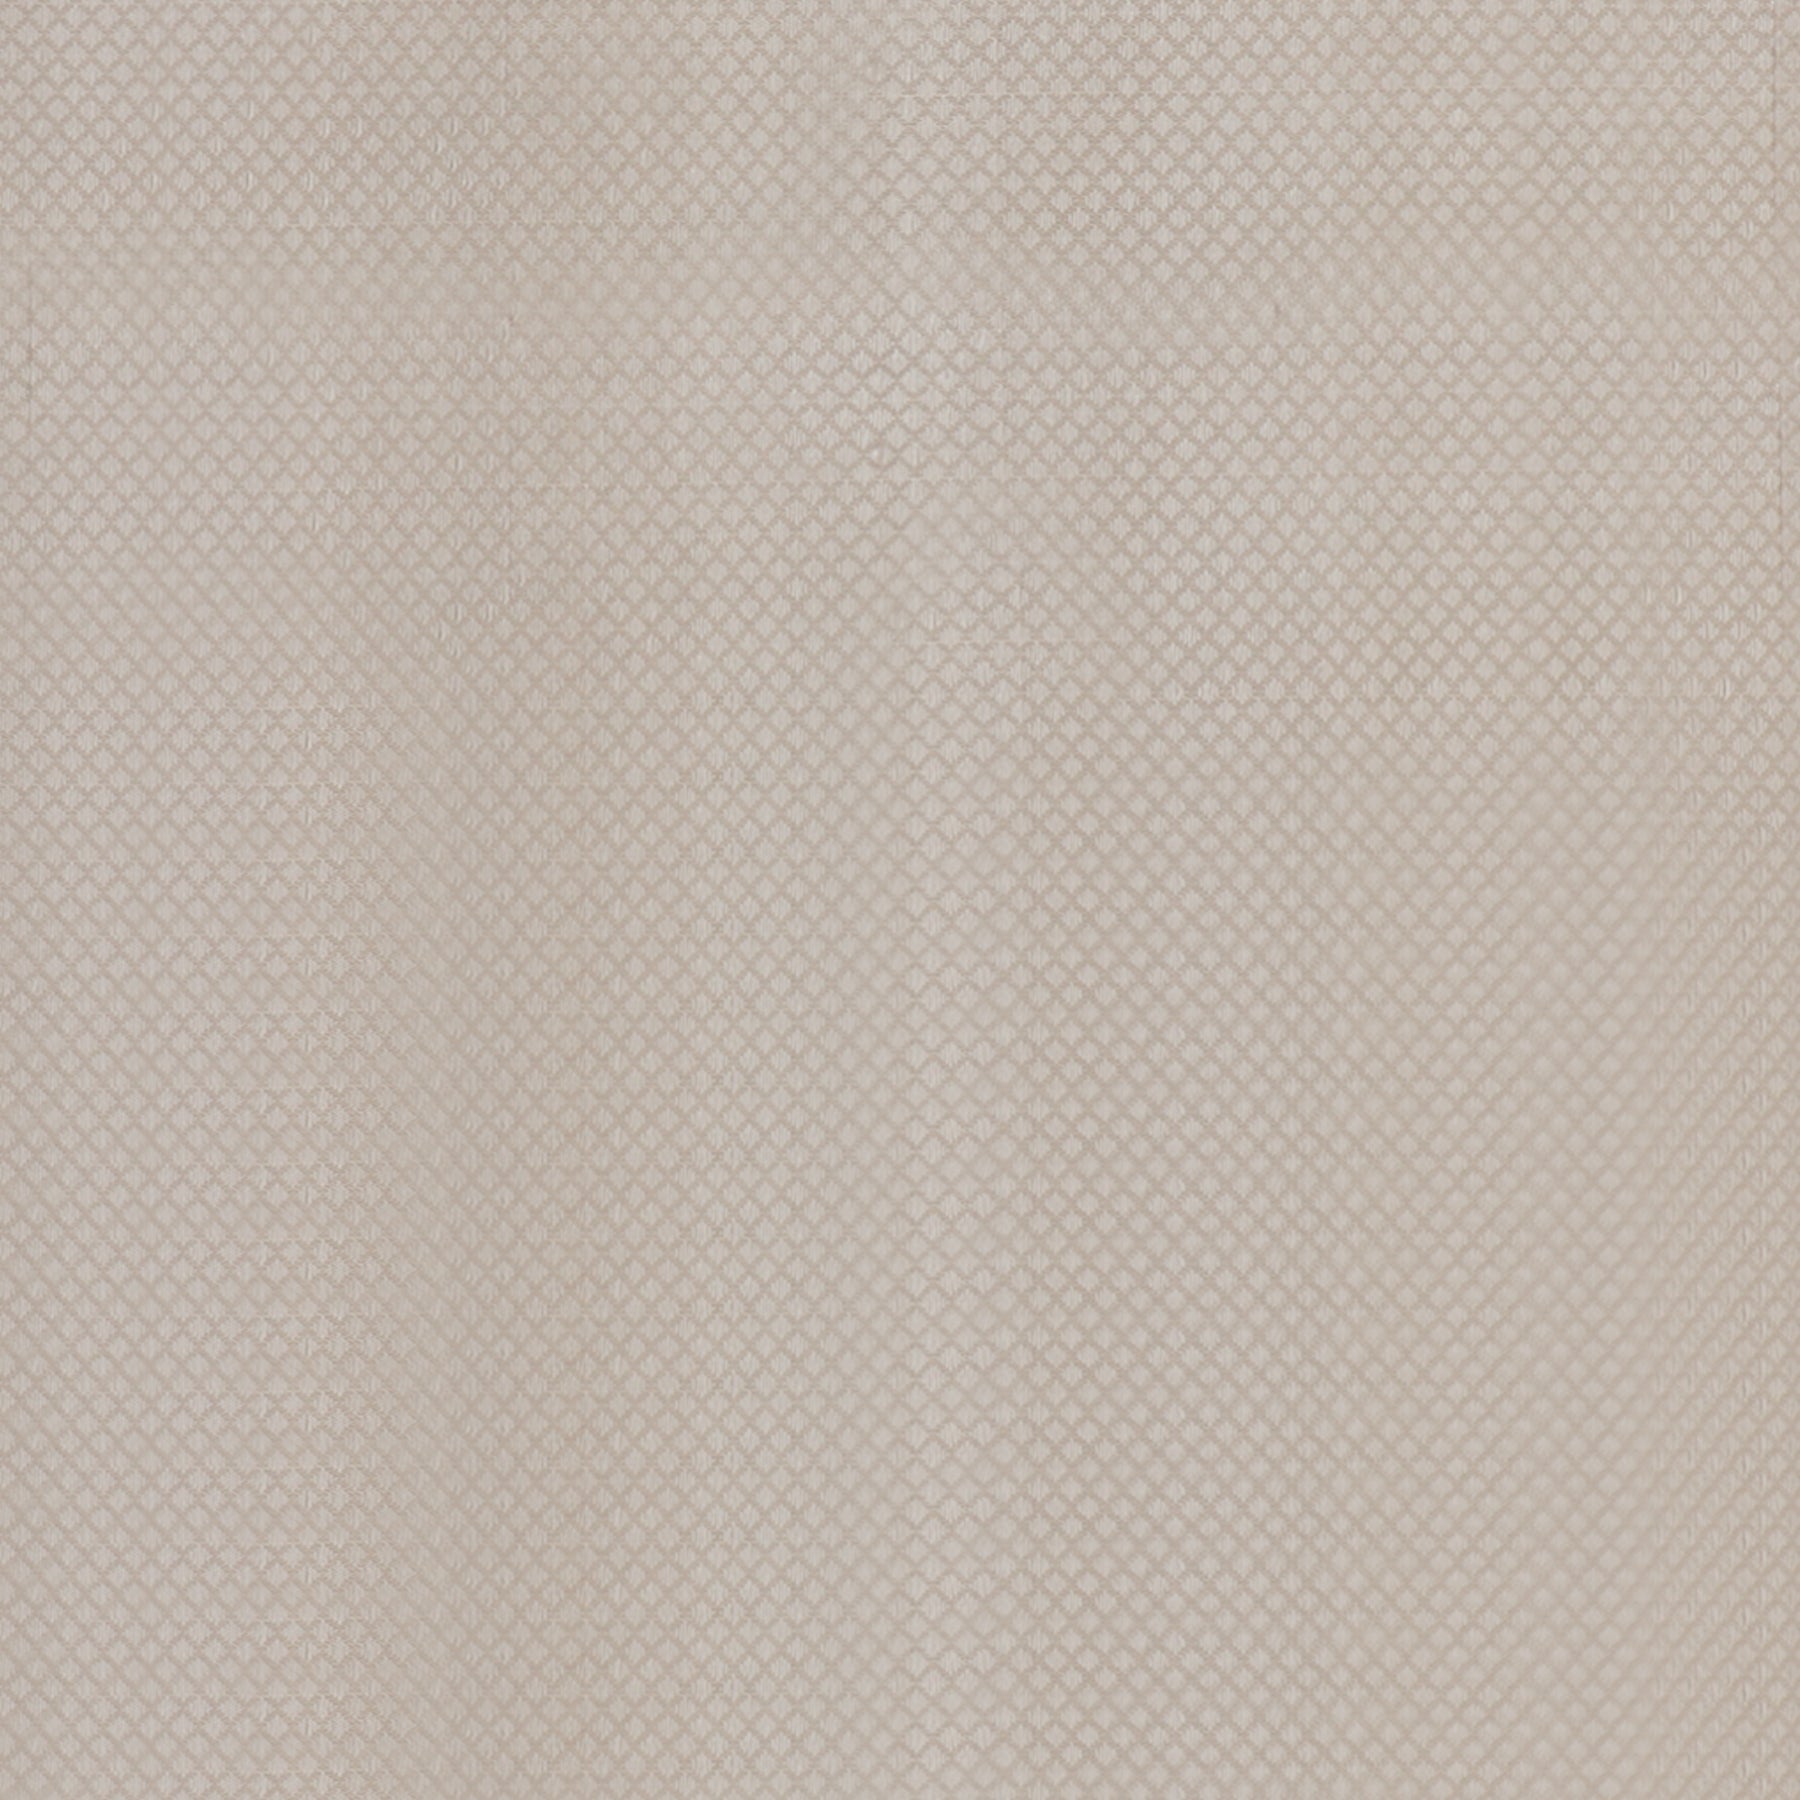 Kanakavalli Kanjivaram Silk Fabric Length 110-27-110292 - Full View Close Up